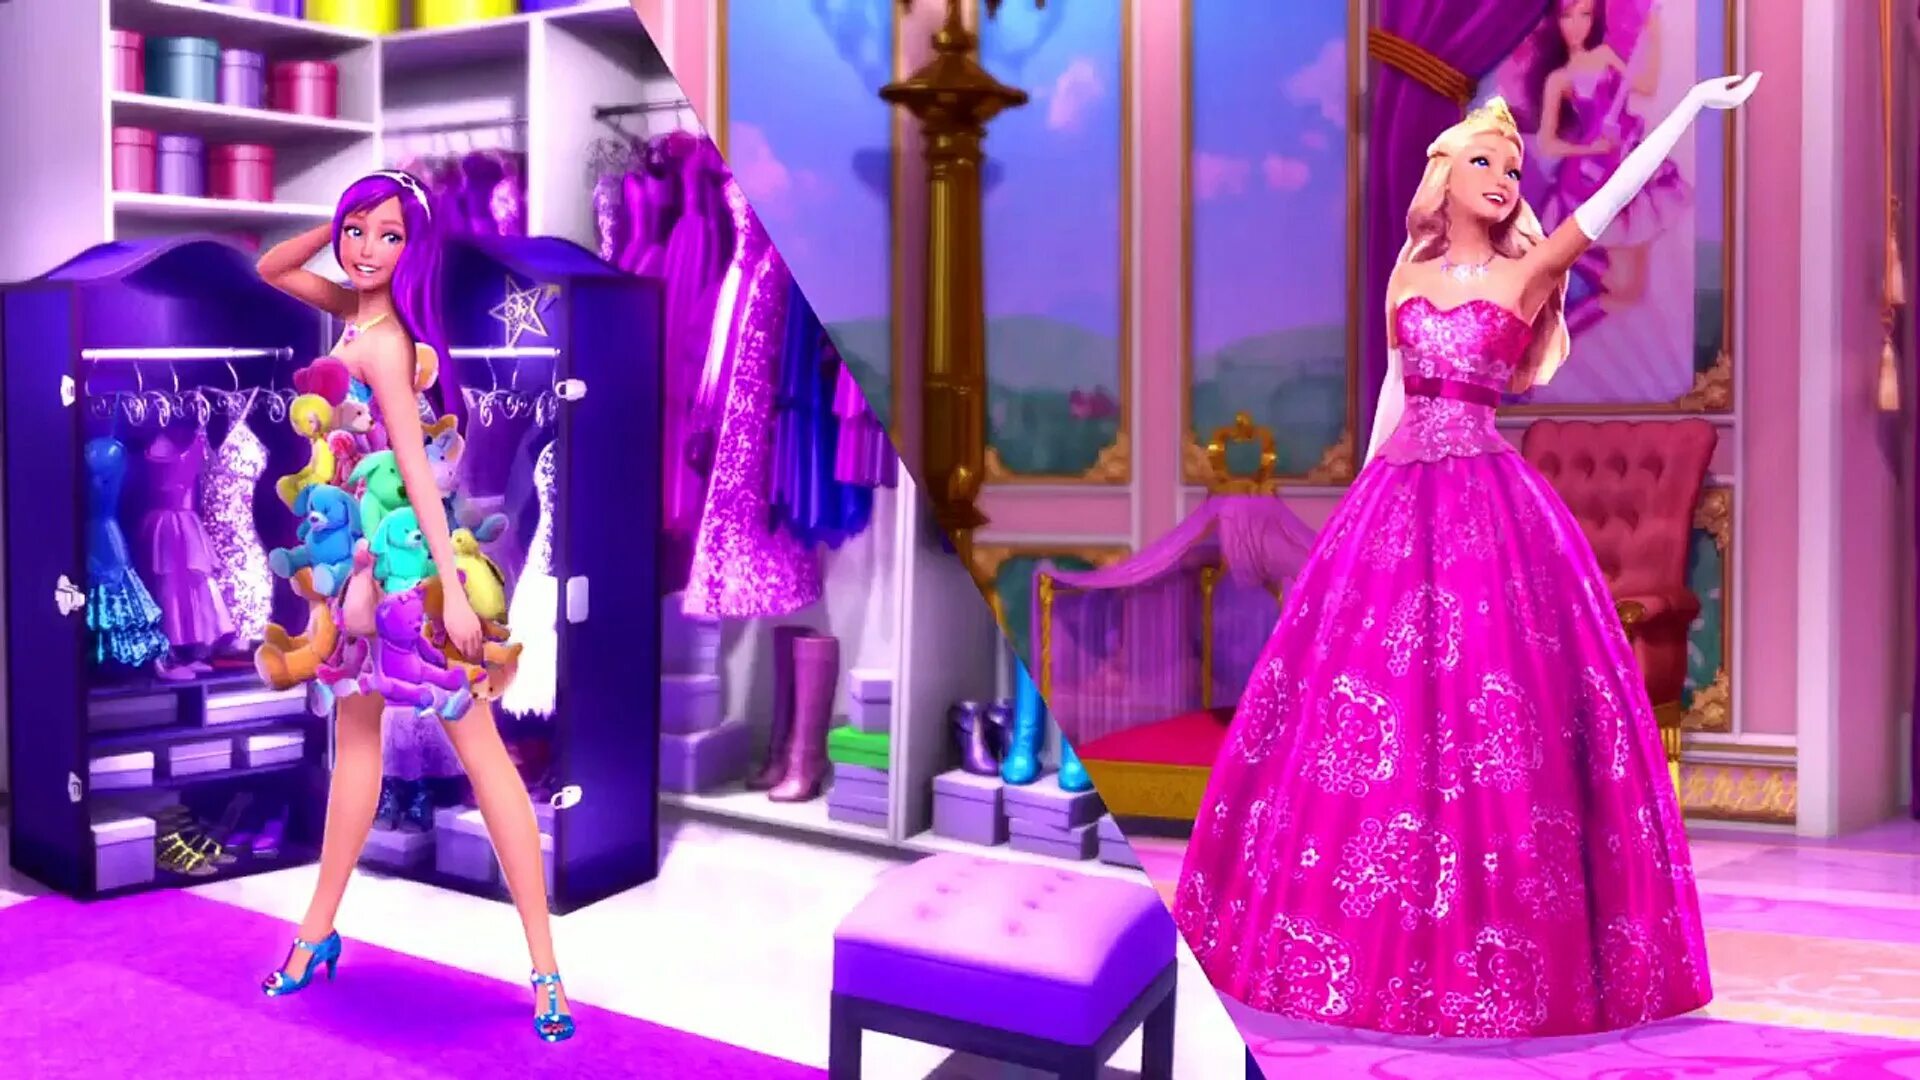 Принцесса и поп звезда. Барби. Принцесса и поп-звезда. Барби принцесса и поп-звезда Тори. Барби попстар принцесса. Барби принцесса и поп-звезда Кейра.